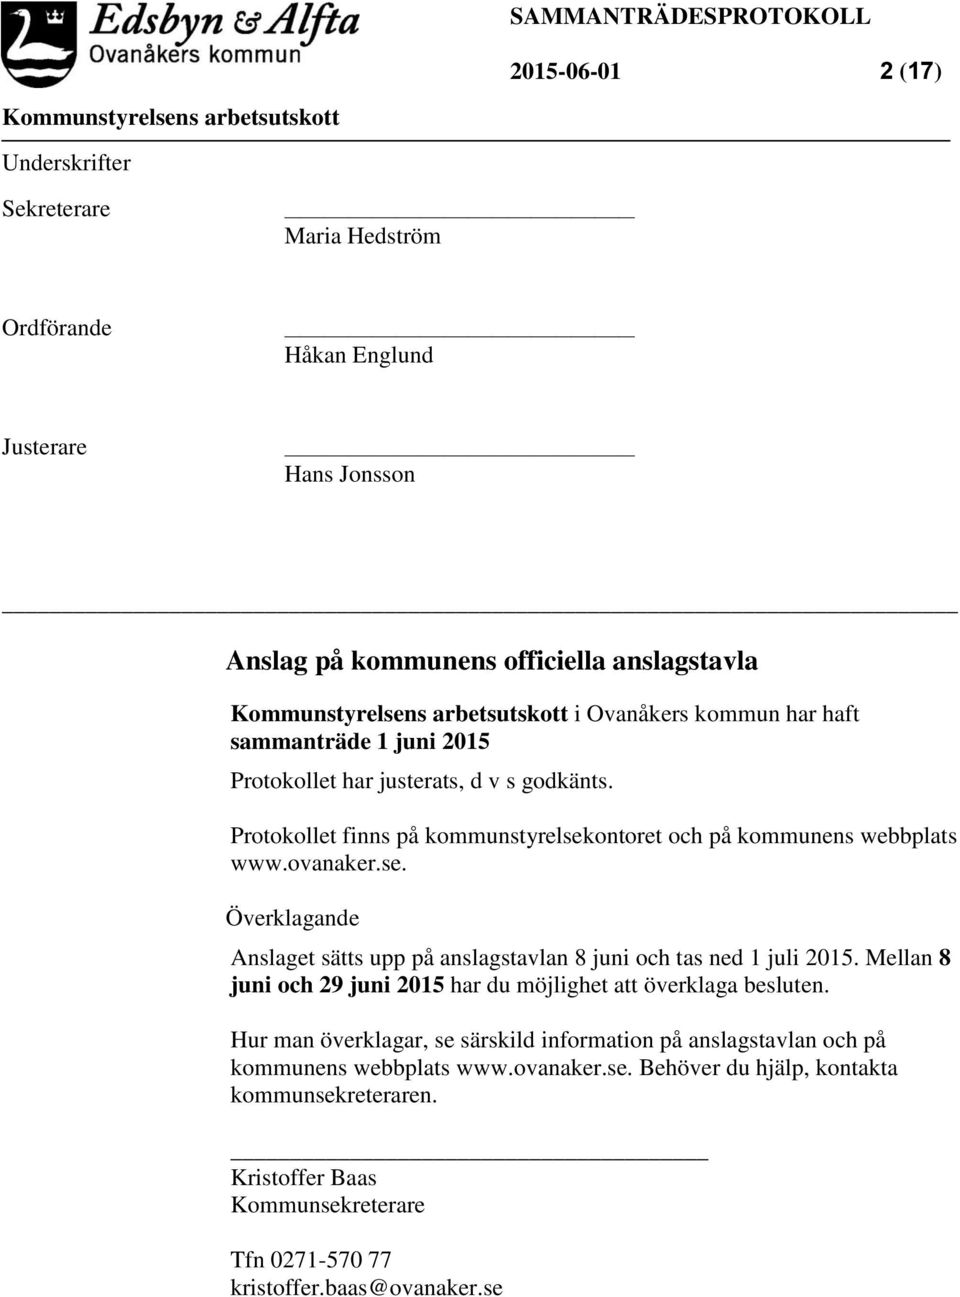 Protokollet finns på kommunstyrelsekontoret och på kommunens webbplats www.ovanaker.se. Överklagande Anslaget sätts upp på anslagstavlan 8 juni och tas ned 1 juli 2015.